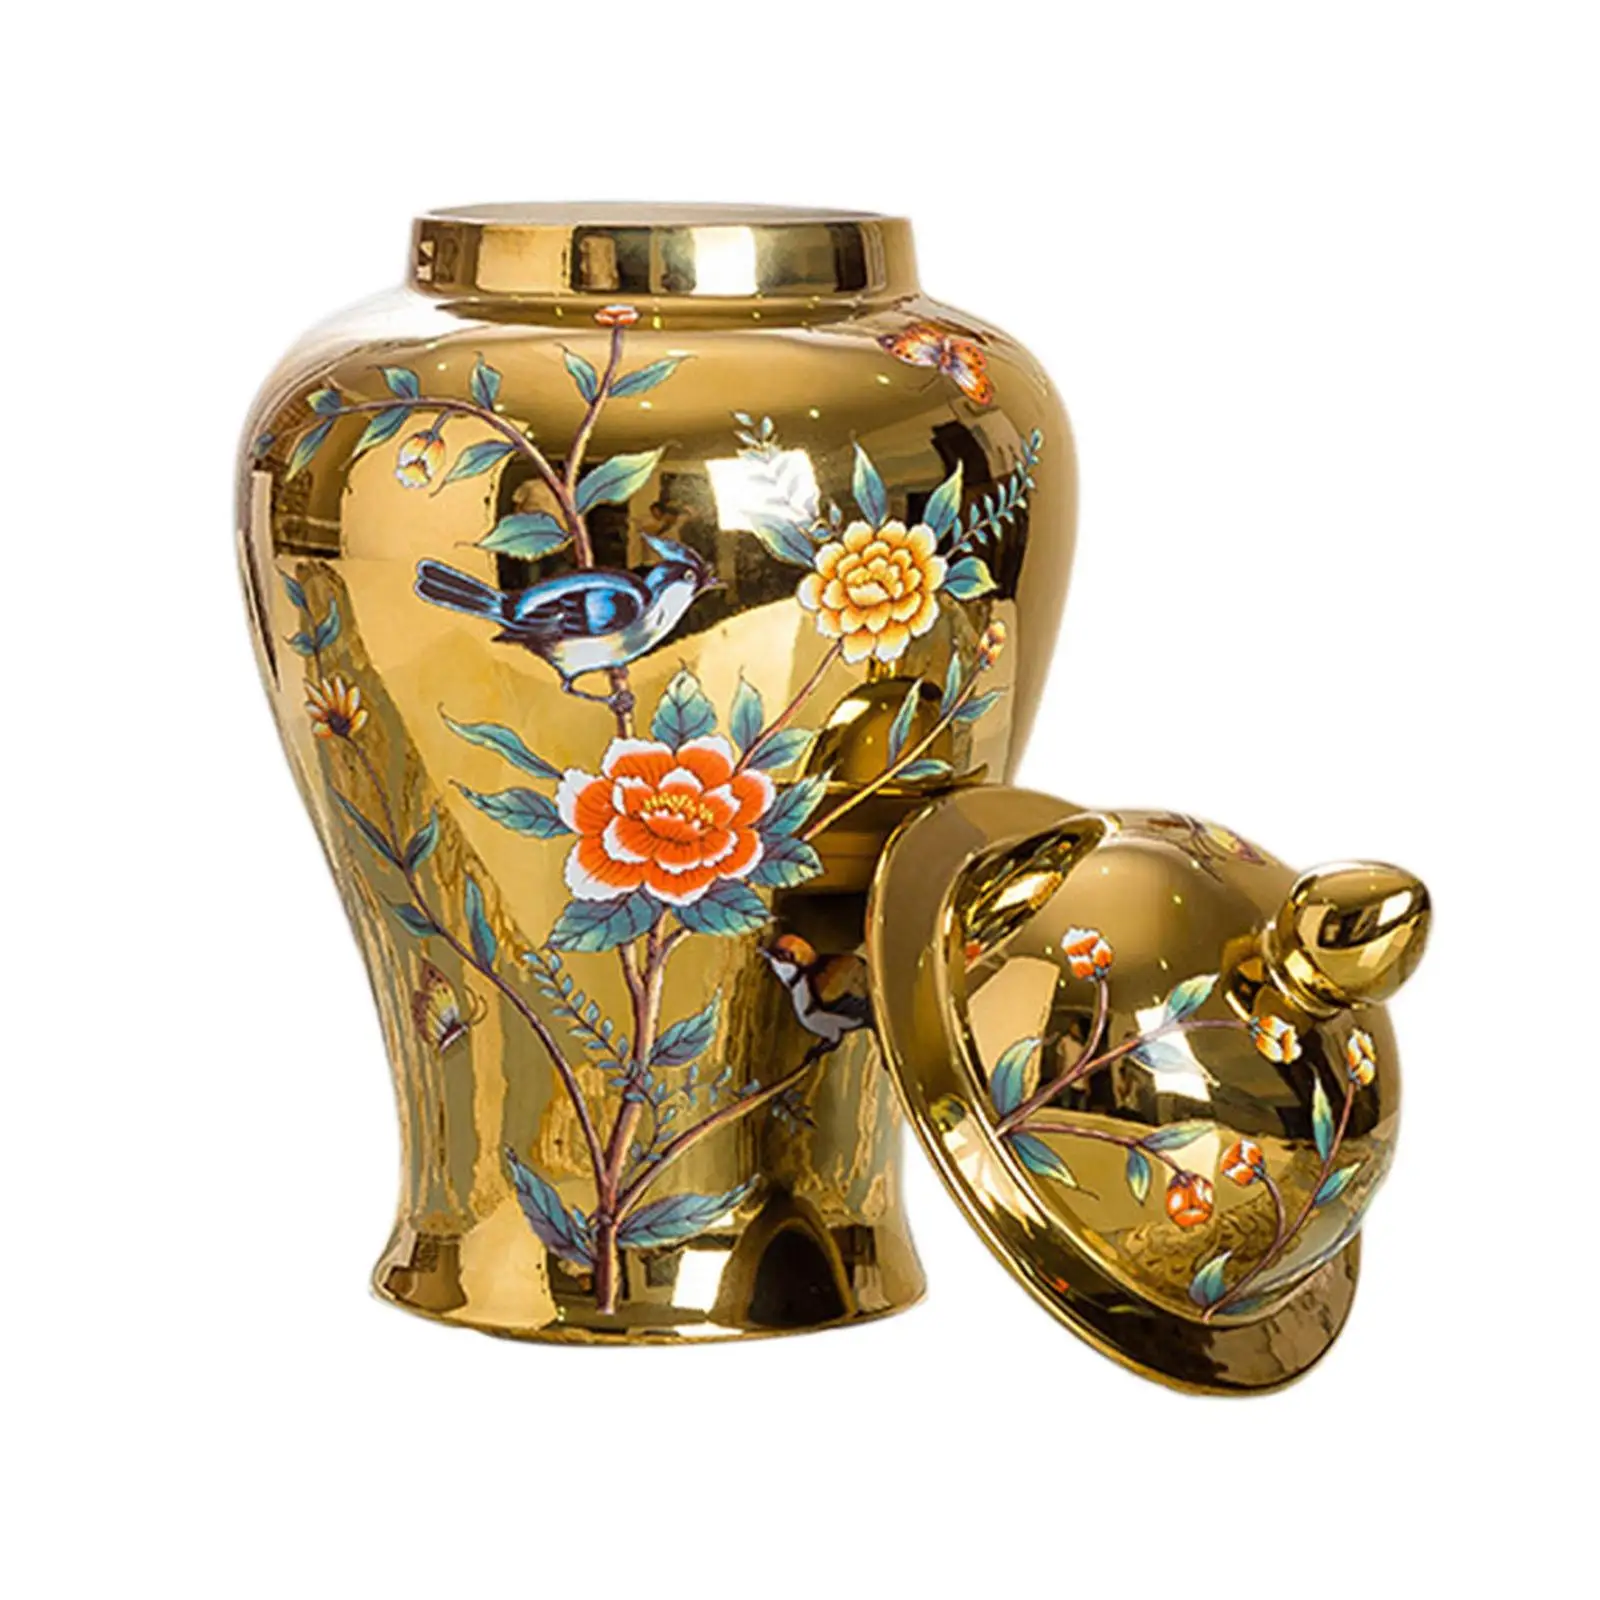 Porcelain Ginger Jar Temple Jar Storage Table Centerpiece Holder Ornaments Desktop Ceramic Flower Vase for Home Dining Room